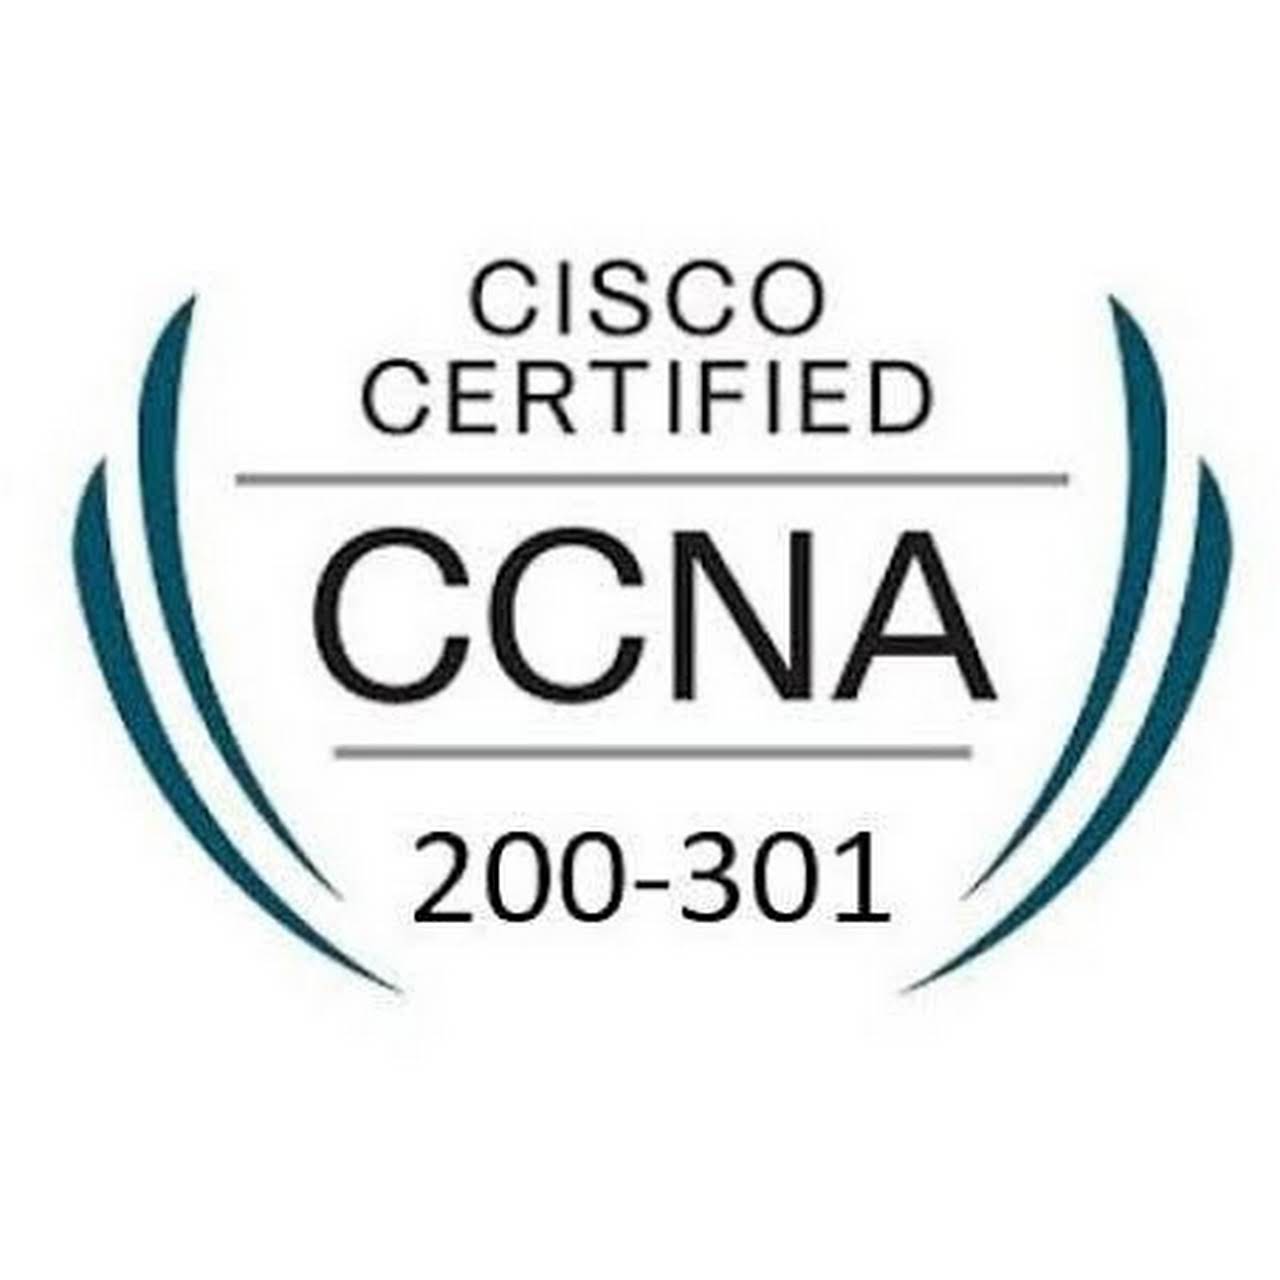 cisco ccna logo